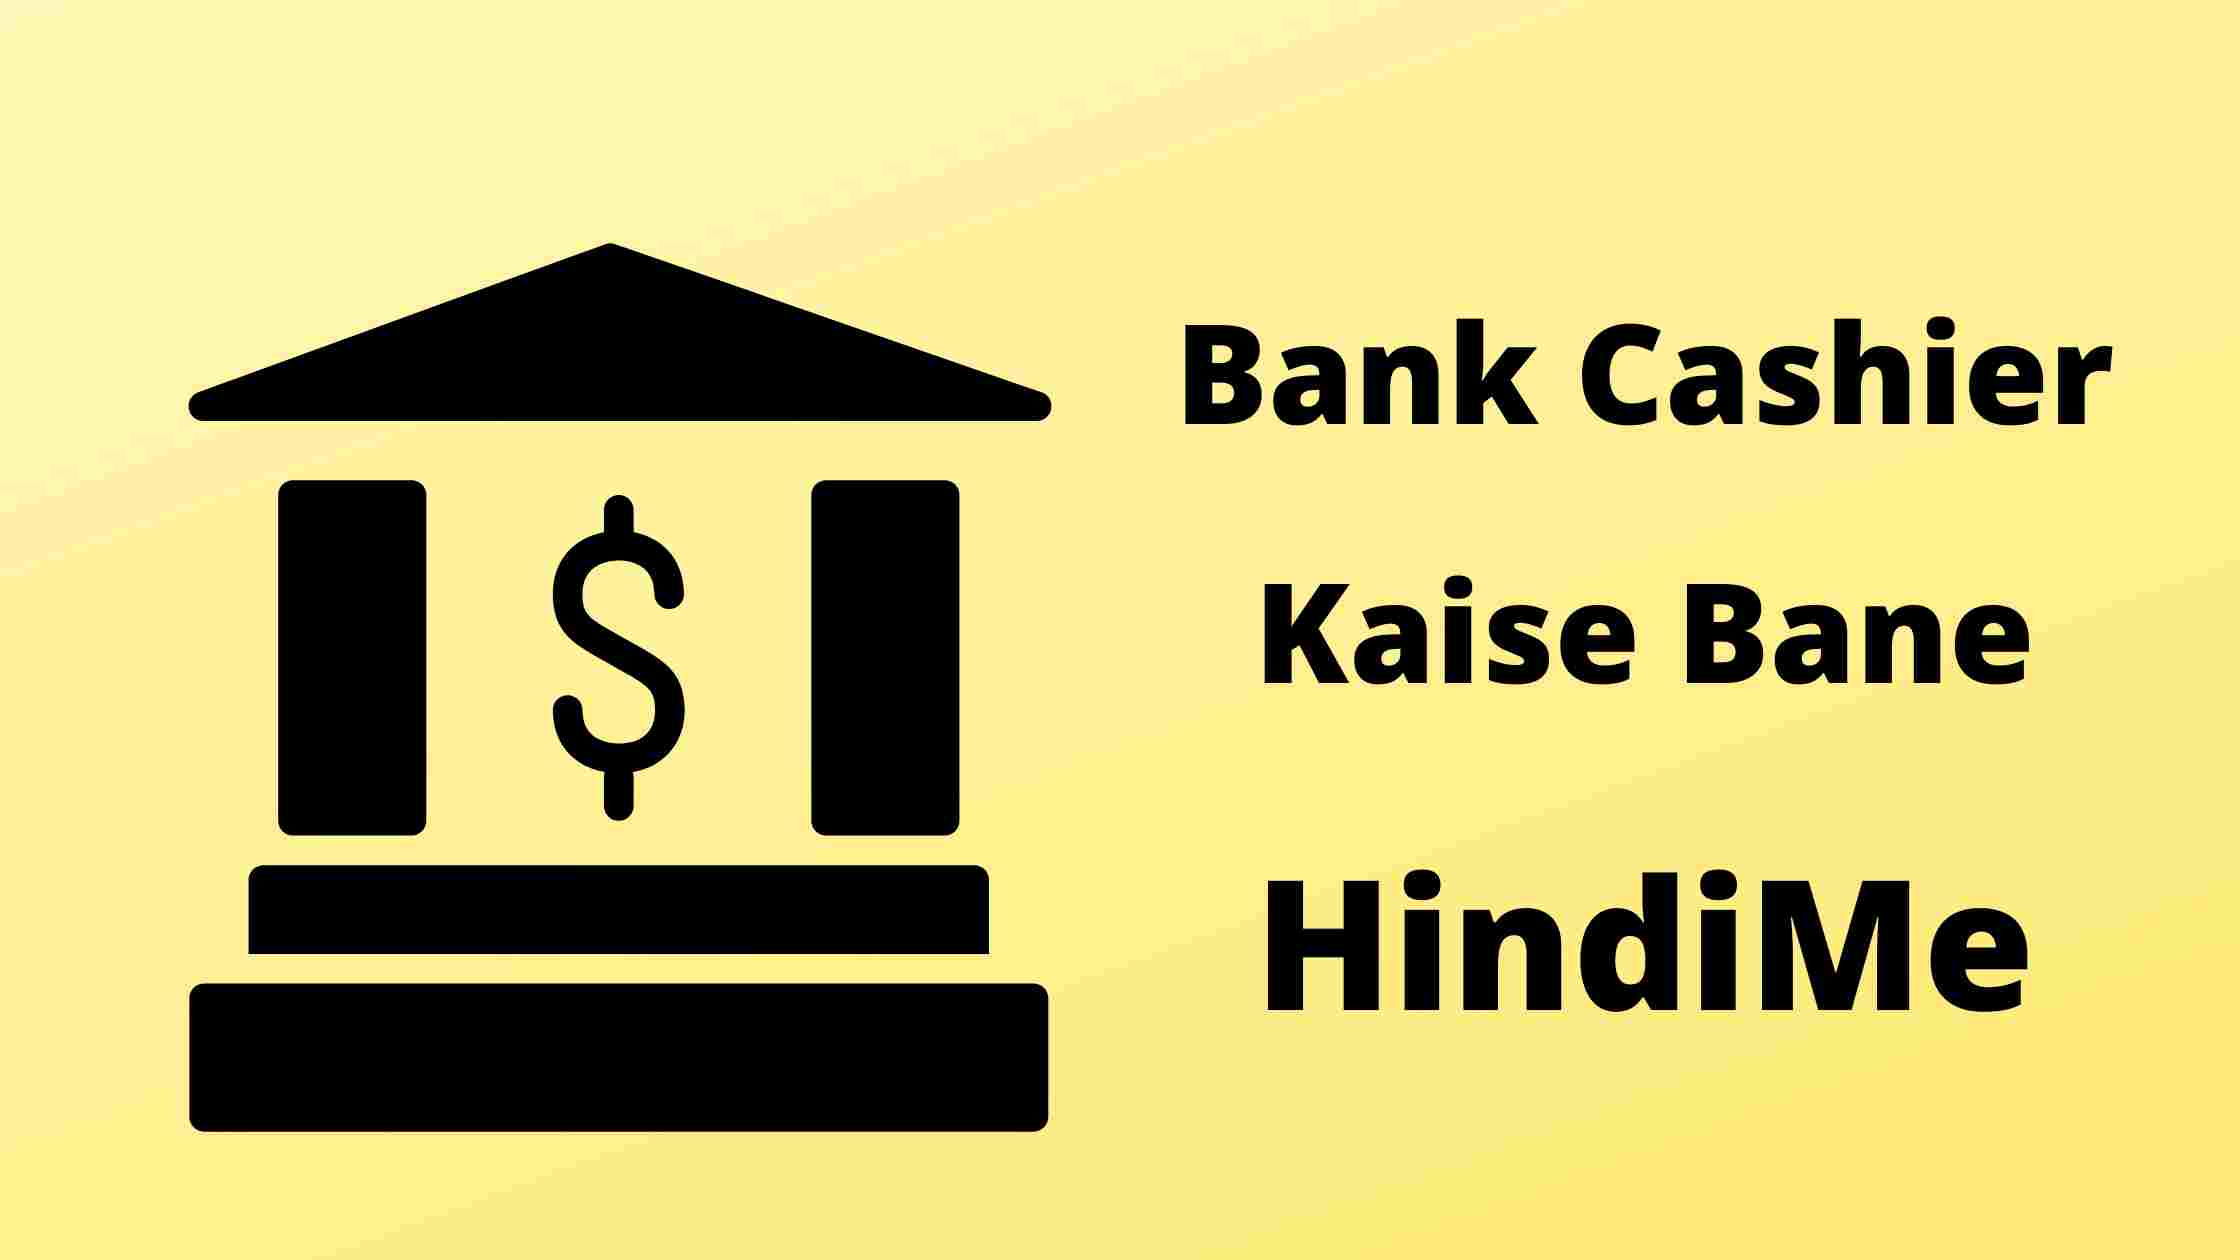 Bank Cashier Kaise Bane - बैंक केशियर कैसे बने ? एग्जाम और सैलरी